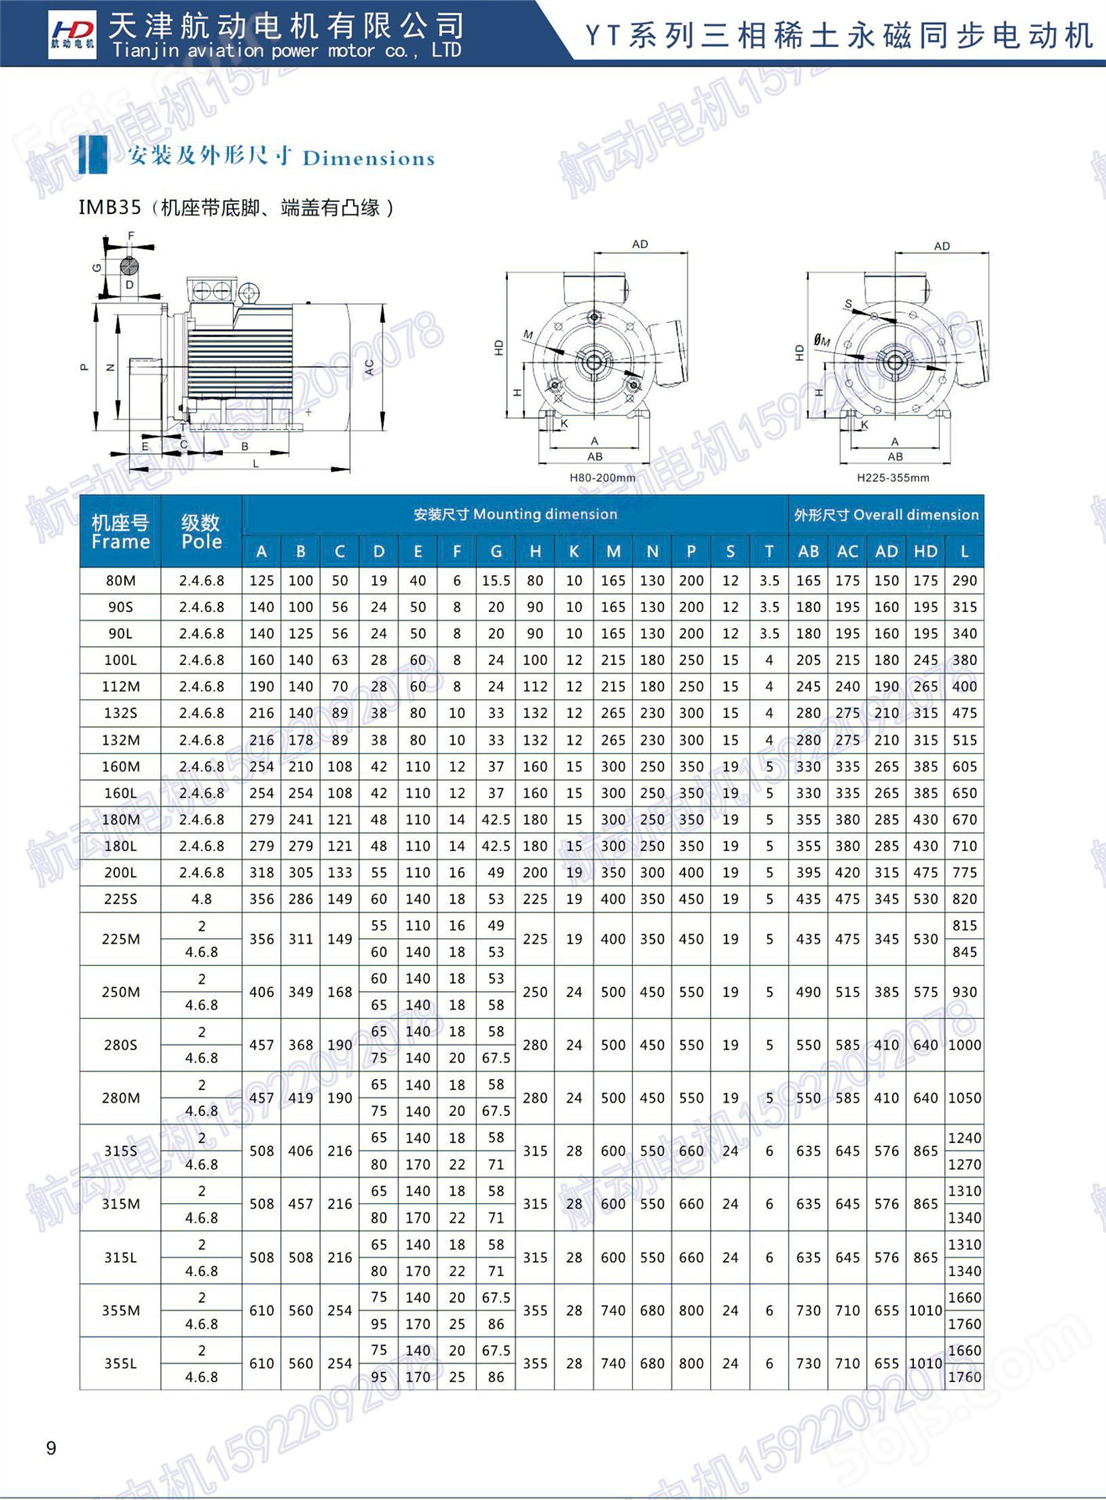  高精密度永磁同步电机YT-280S-3000/75KW稀土永磁同步电机